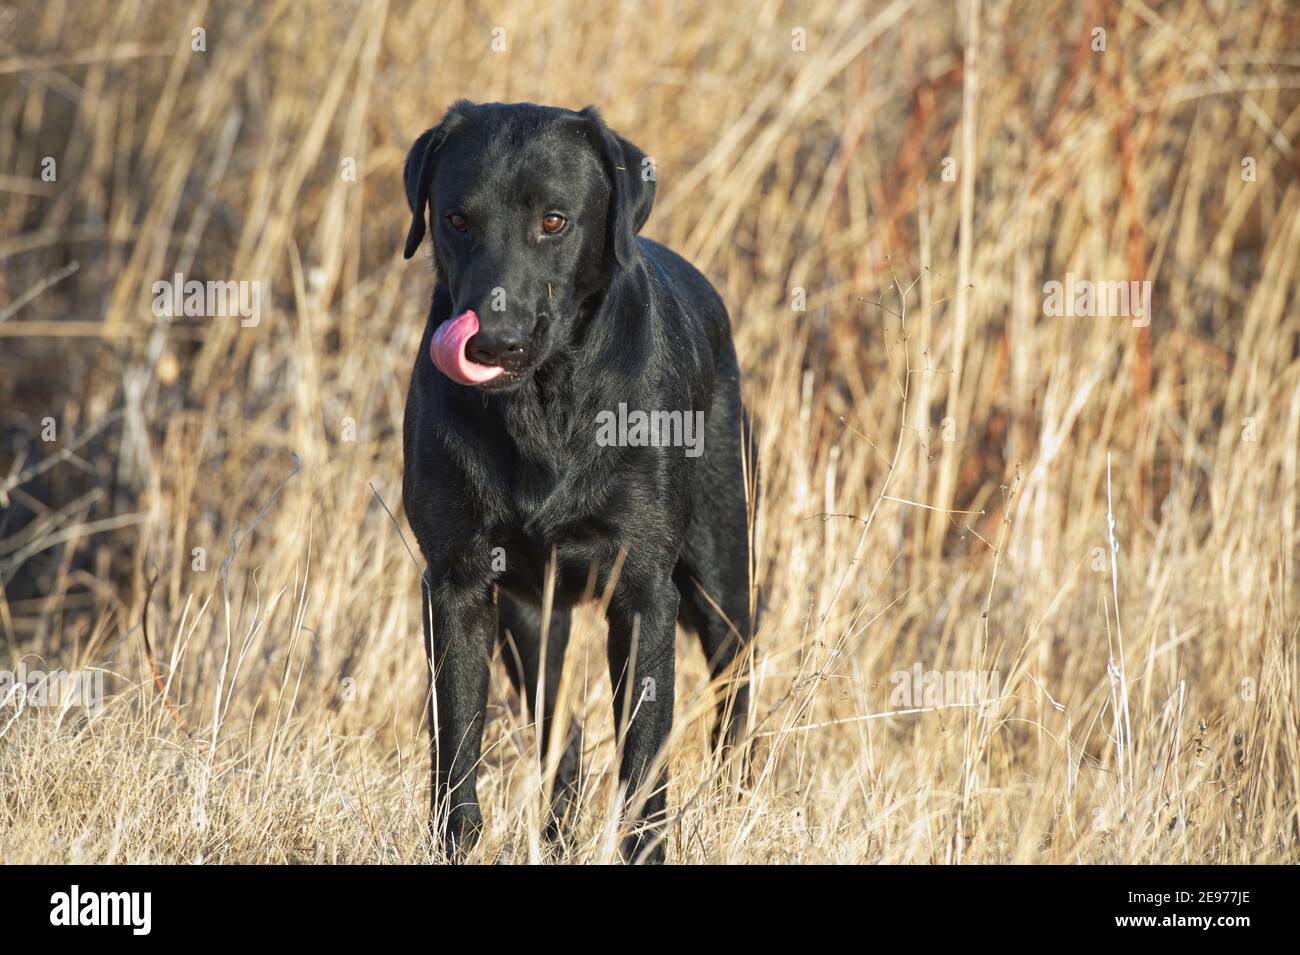 Black Labrador retriever standing and licking his nose Stock Photo